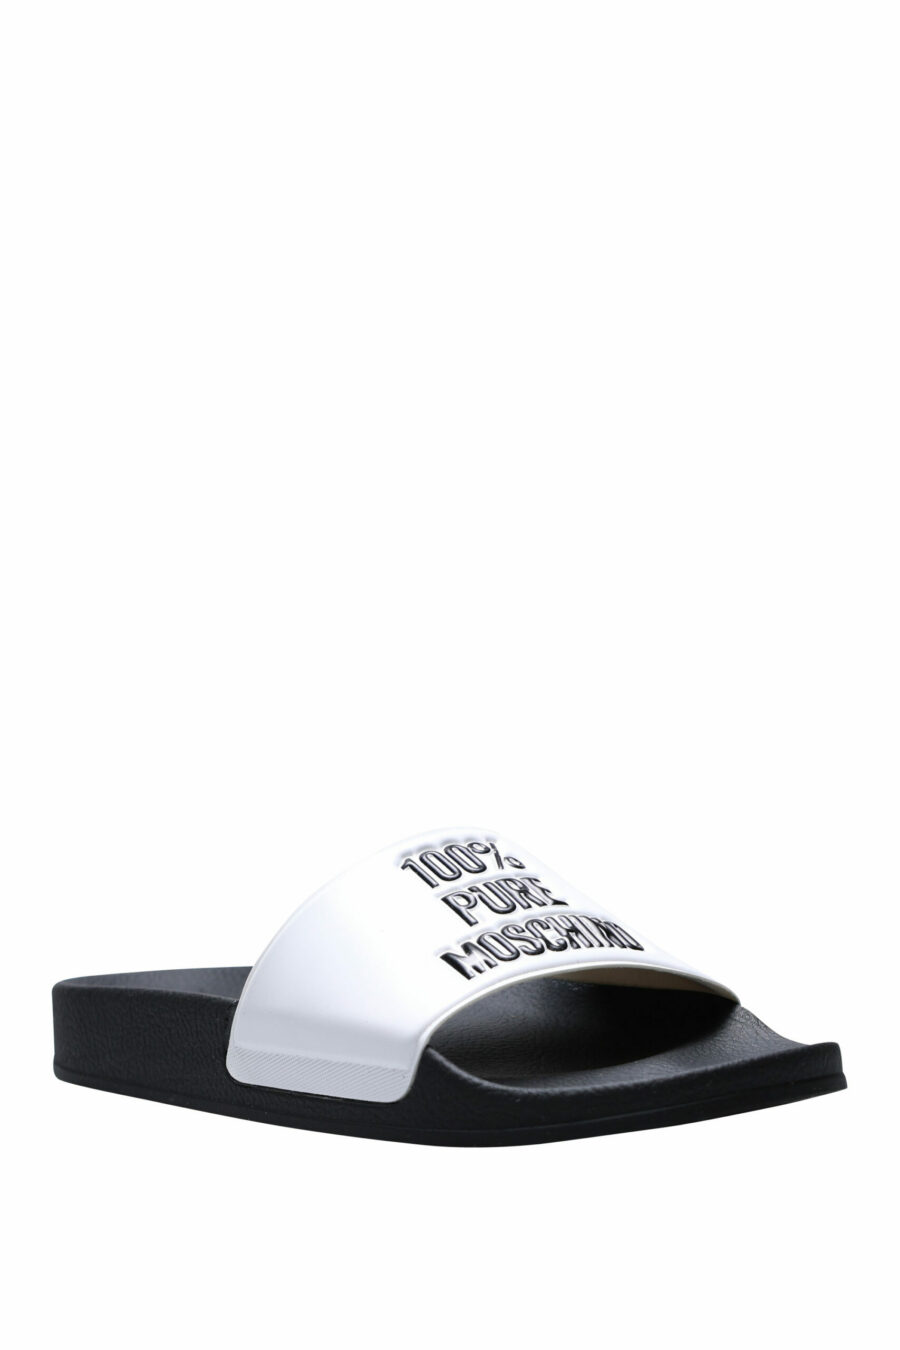 Weiße Flip Flops mit Logo "100% pure moschino" - 8054388534581 1 skaliert